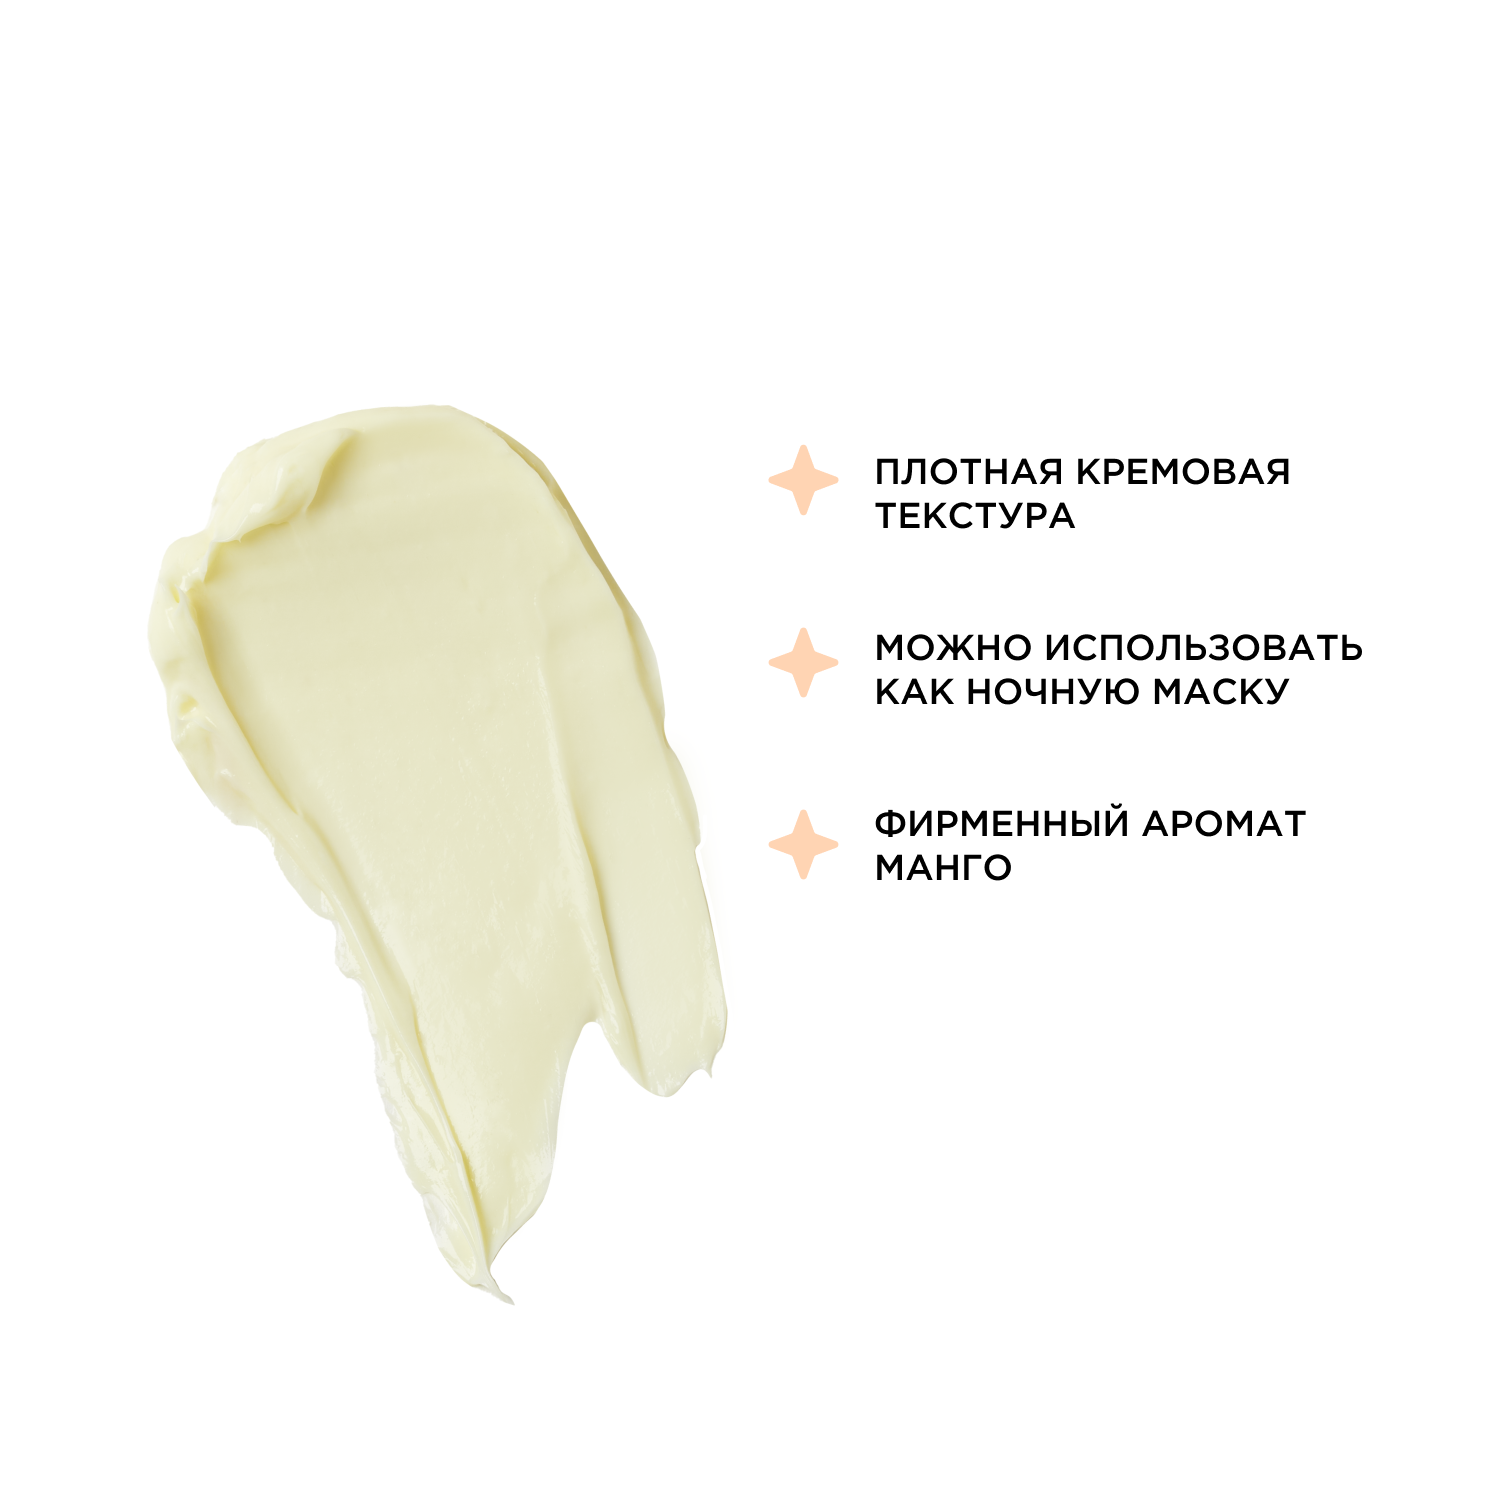 KRYGINA cosmetics Освежающая SOS-маска для мгновенного преображения кожи RECOVERING MASK, 50 мл